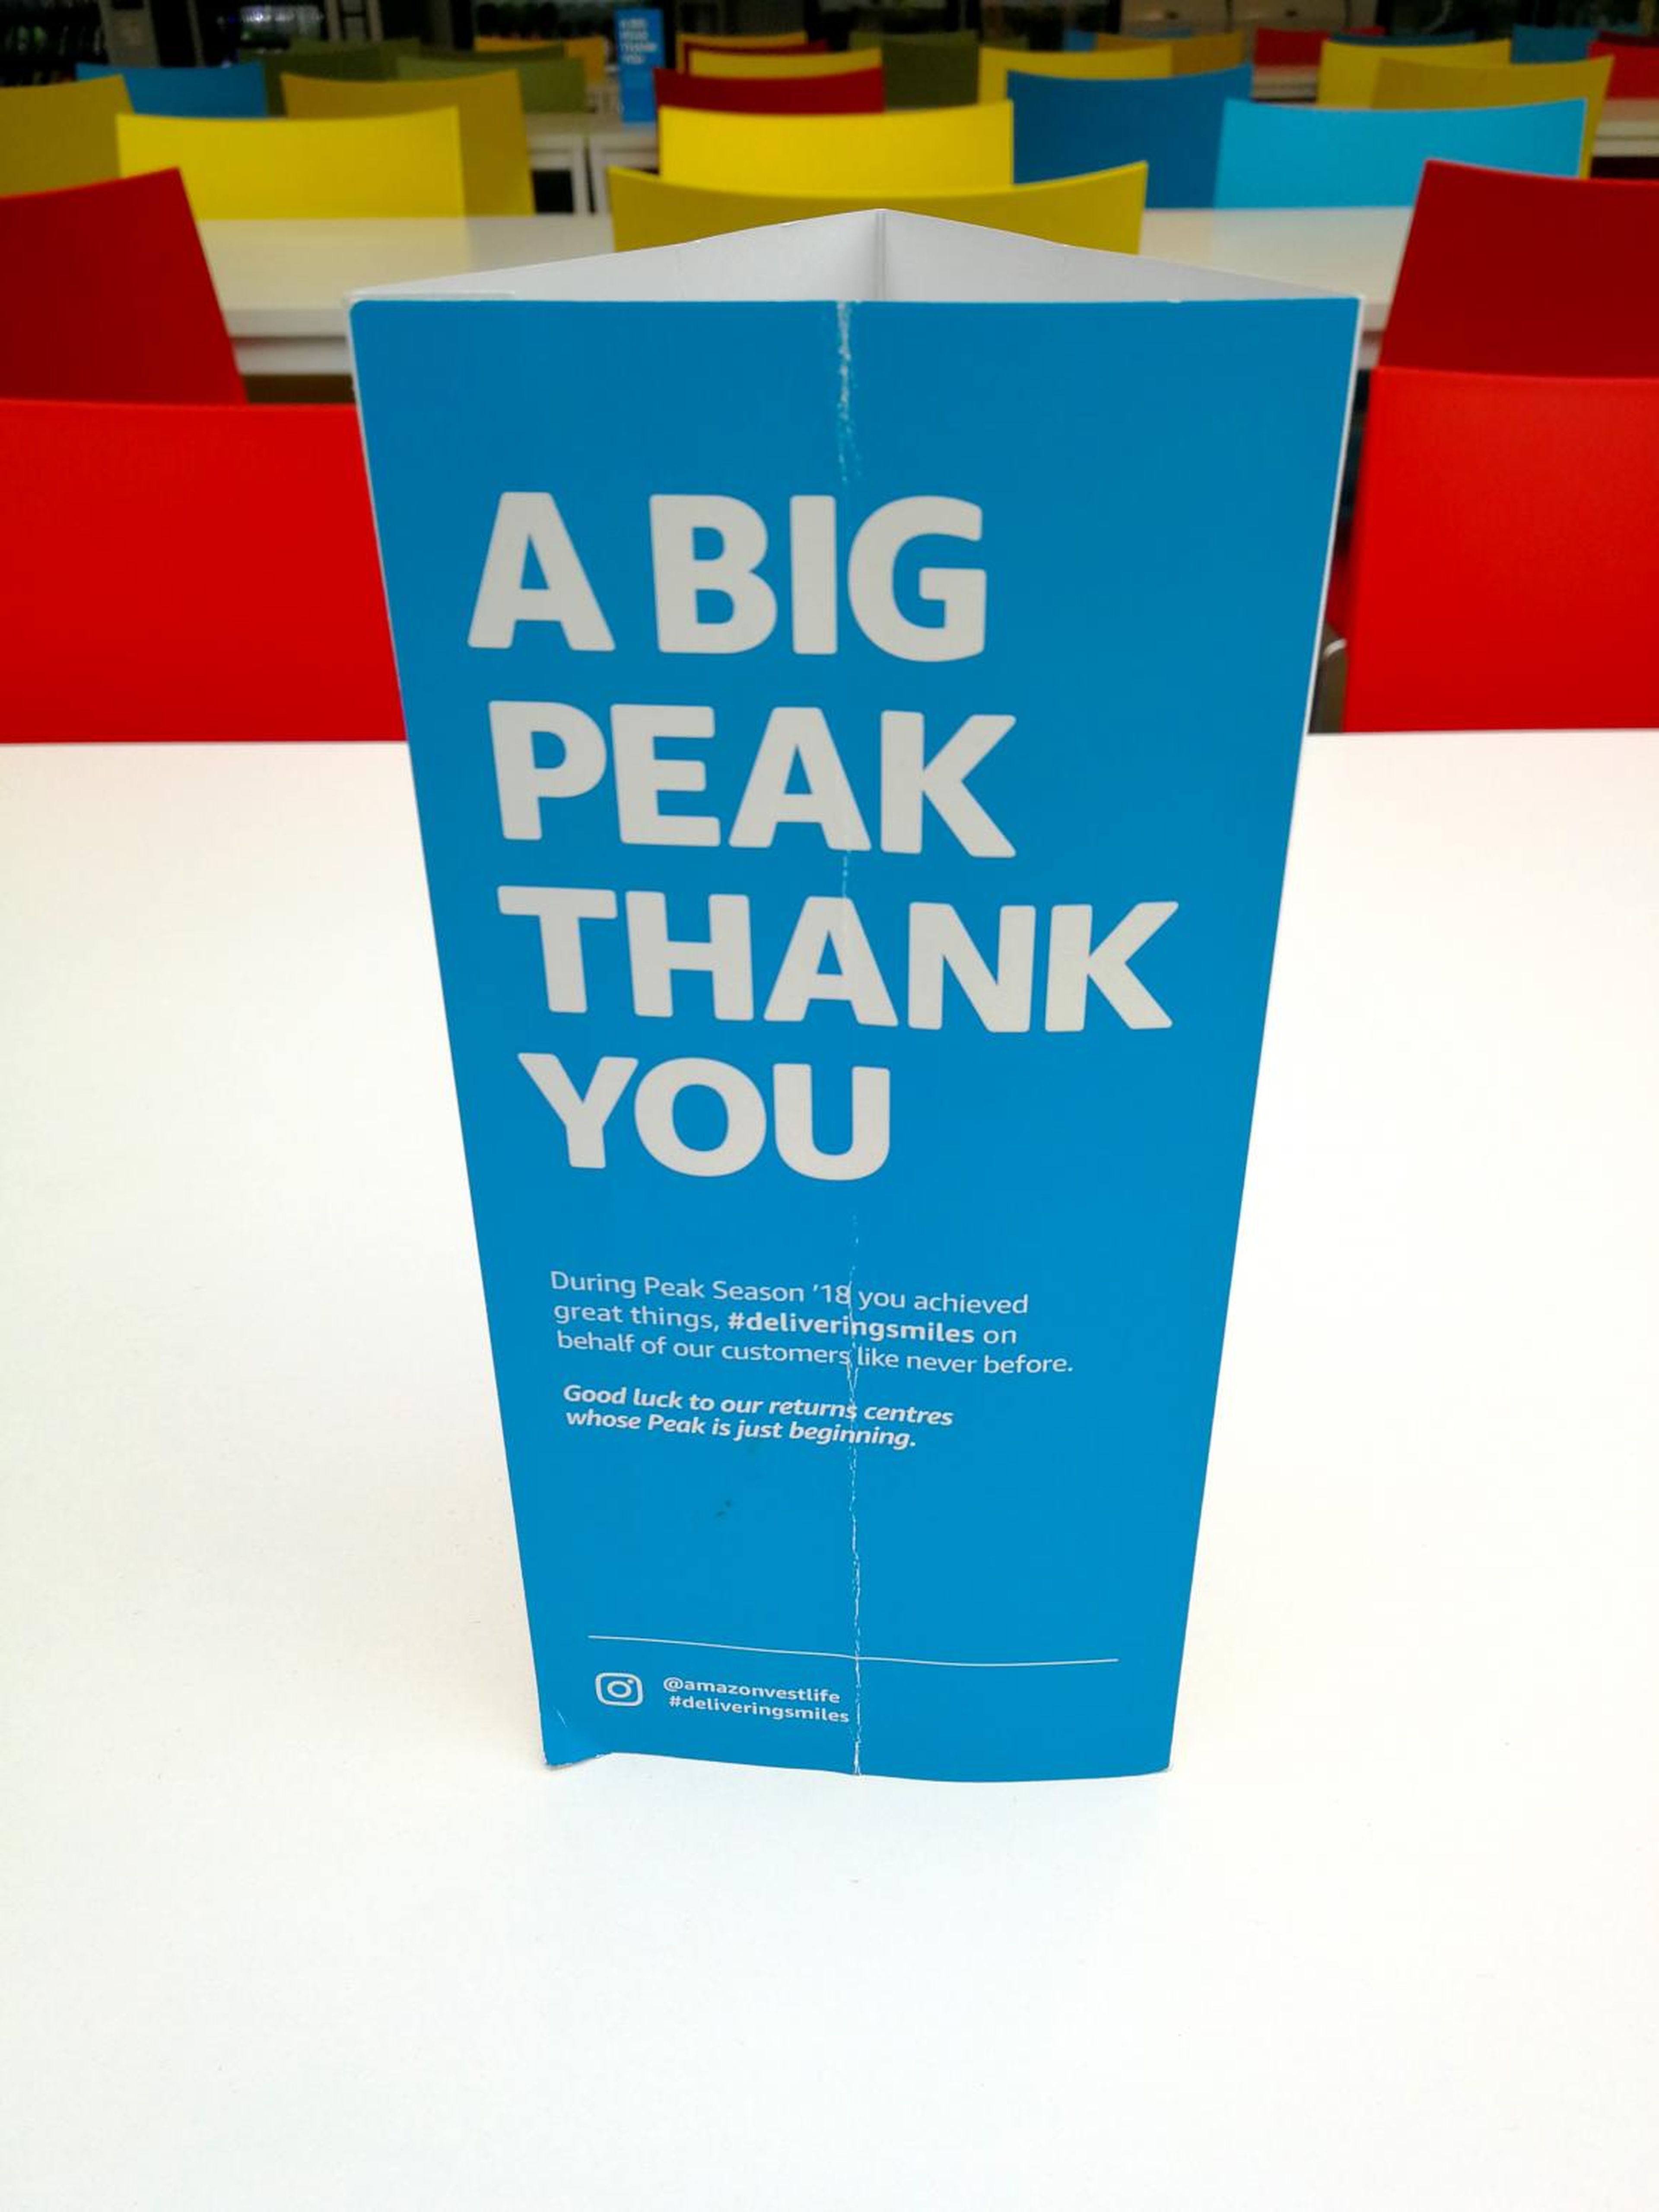 Cartel con el letrero "a big peak thank you" (similar a "un enorme gracias"), en los almacenes de Amazon en Reino Unido, fotografiados en la visita de este periodista de BI.